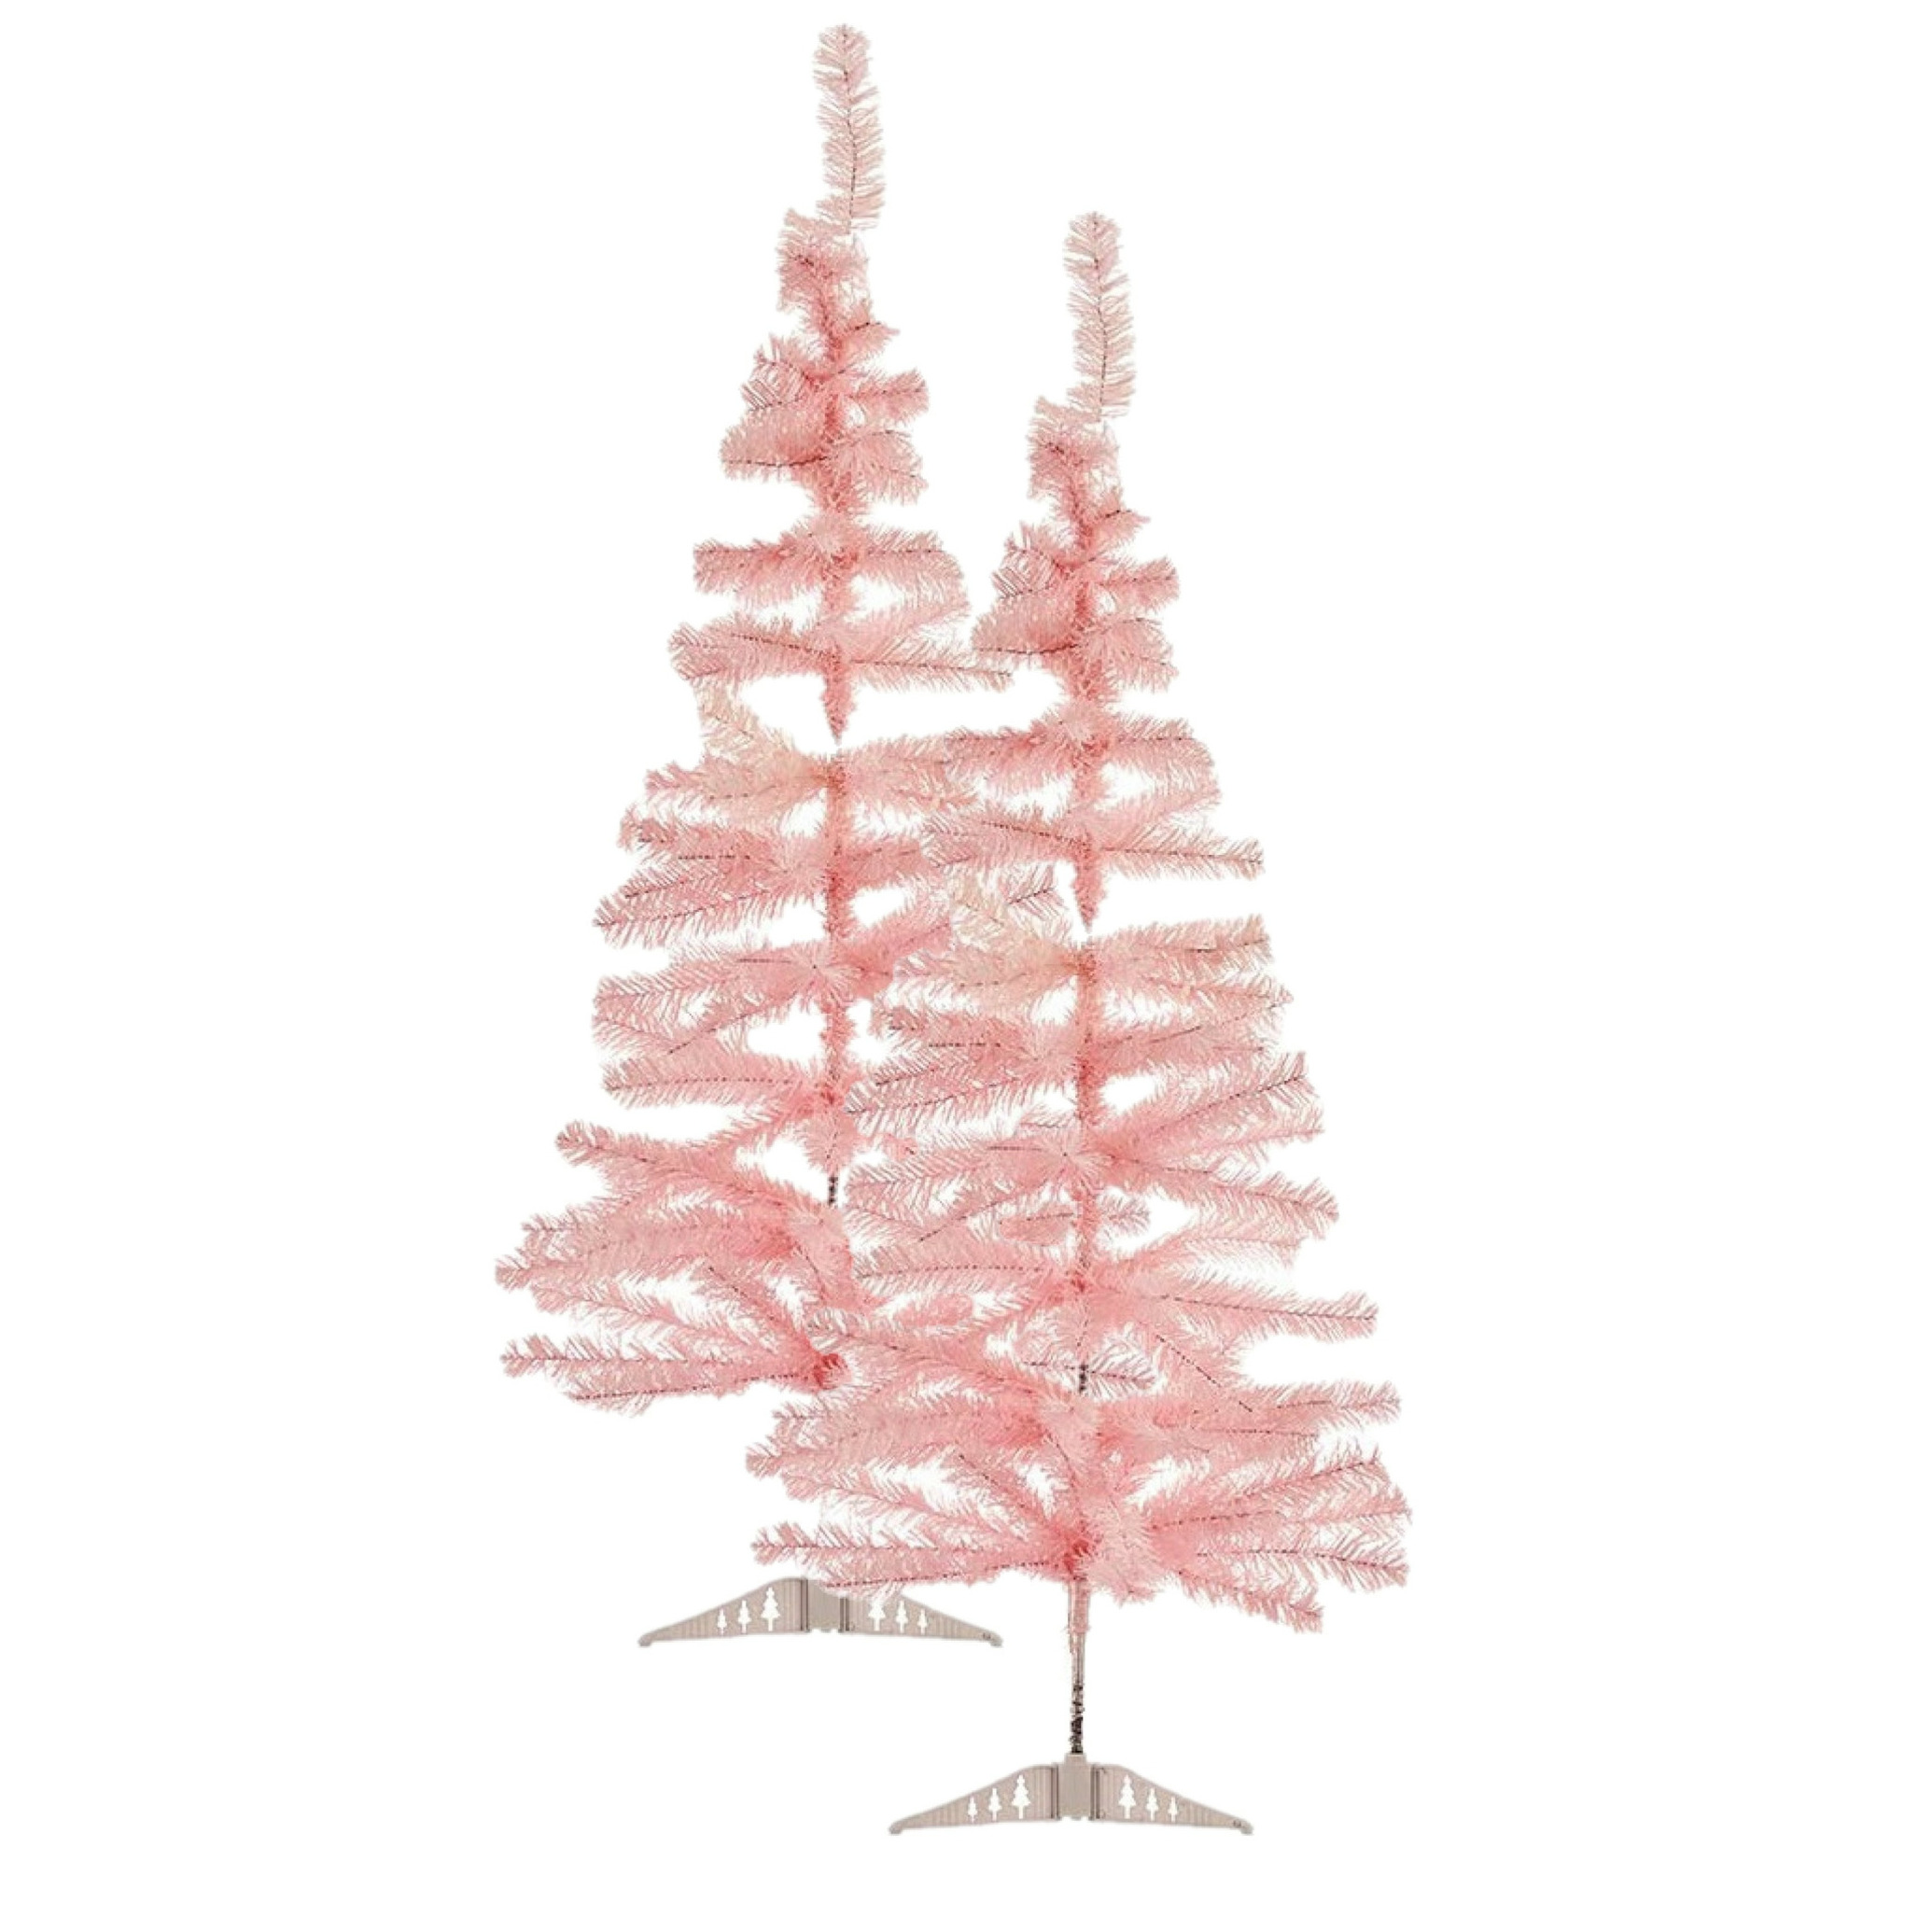 2x stuks kleine lichtroze kerstbomen van 120 cm